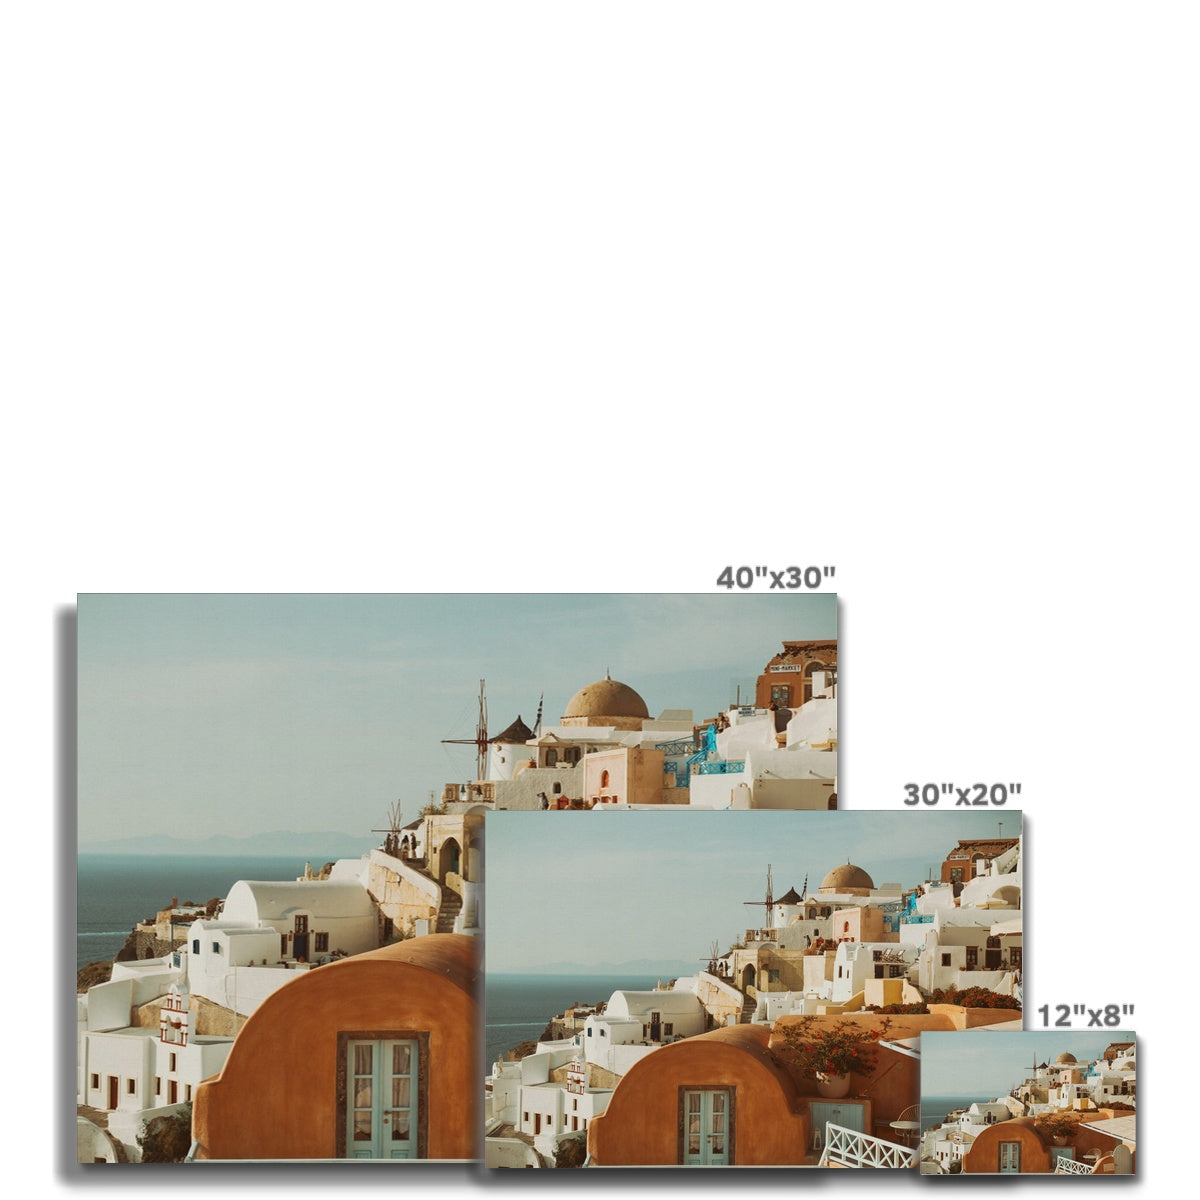 Santorini Architecture Canvas